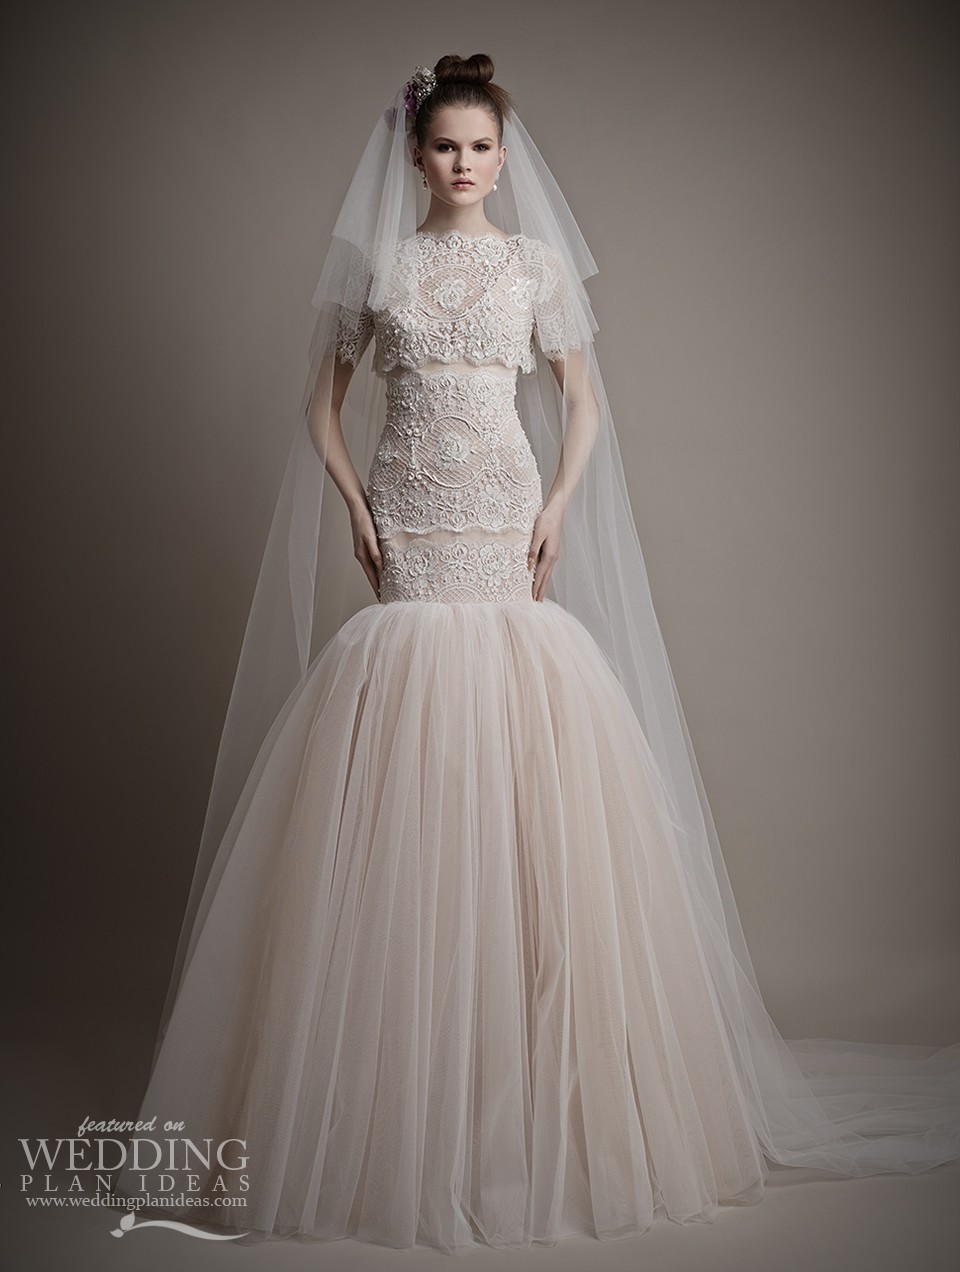 Elizabeth Mermaid Wedding Dress by Ersa Atelier